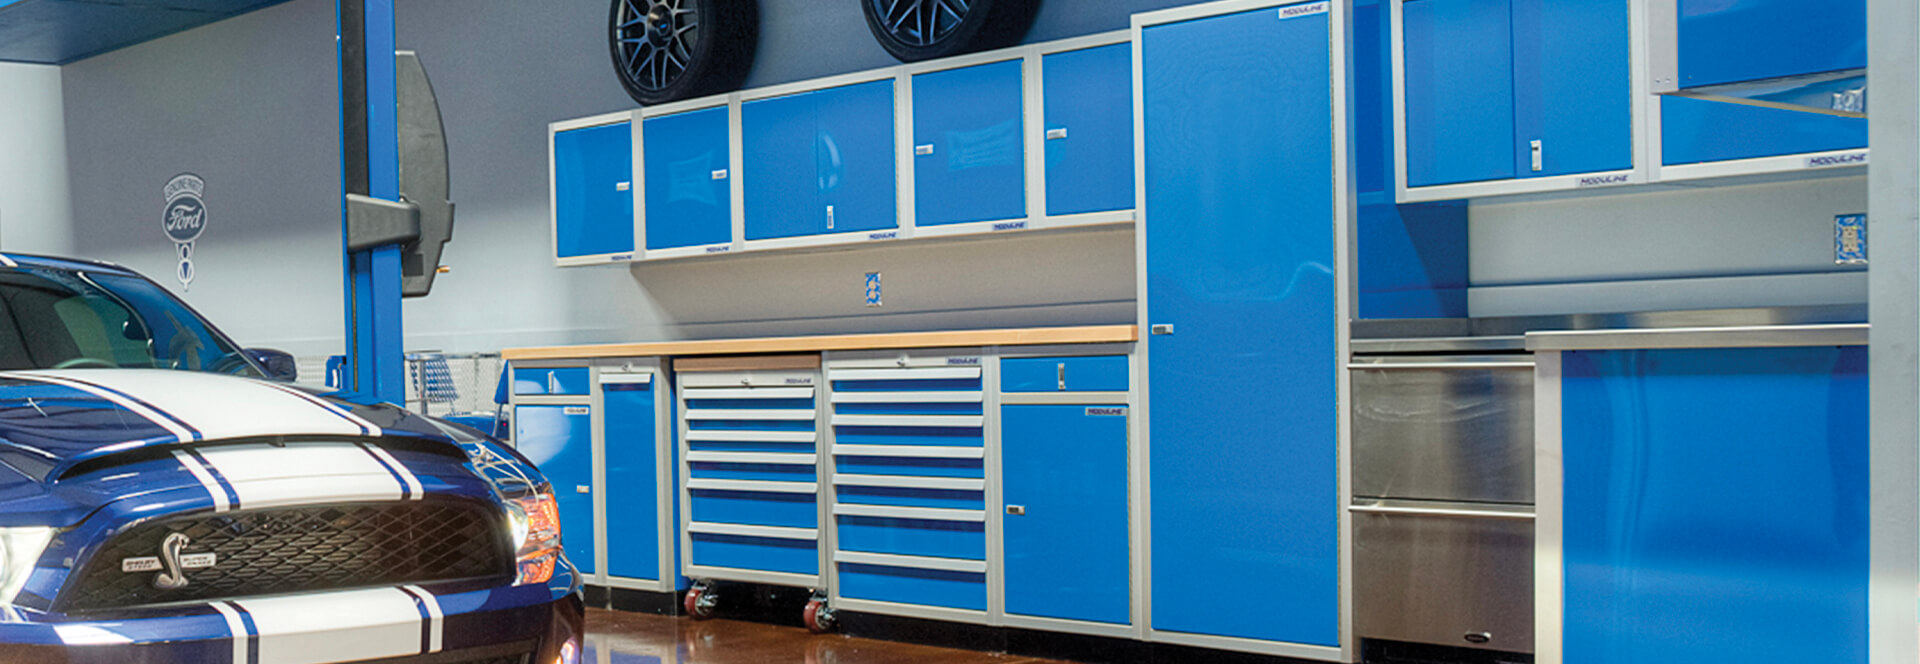 The Best In Luxury Garage Cabinets